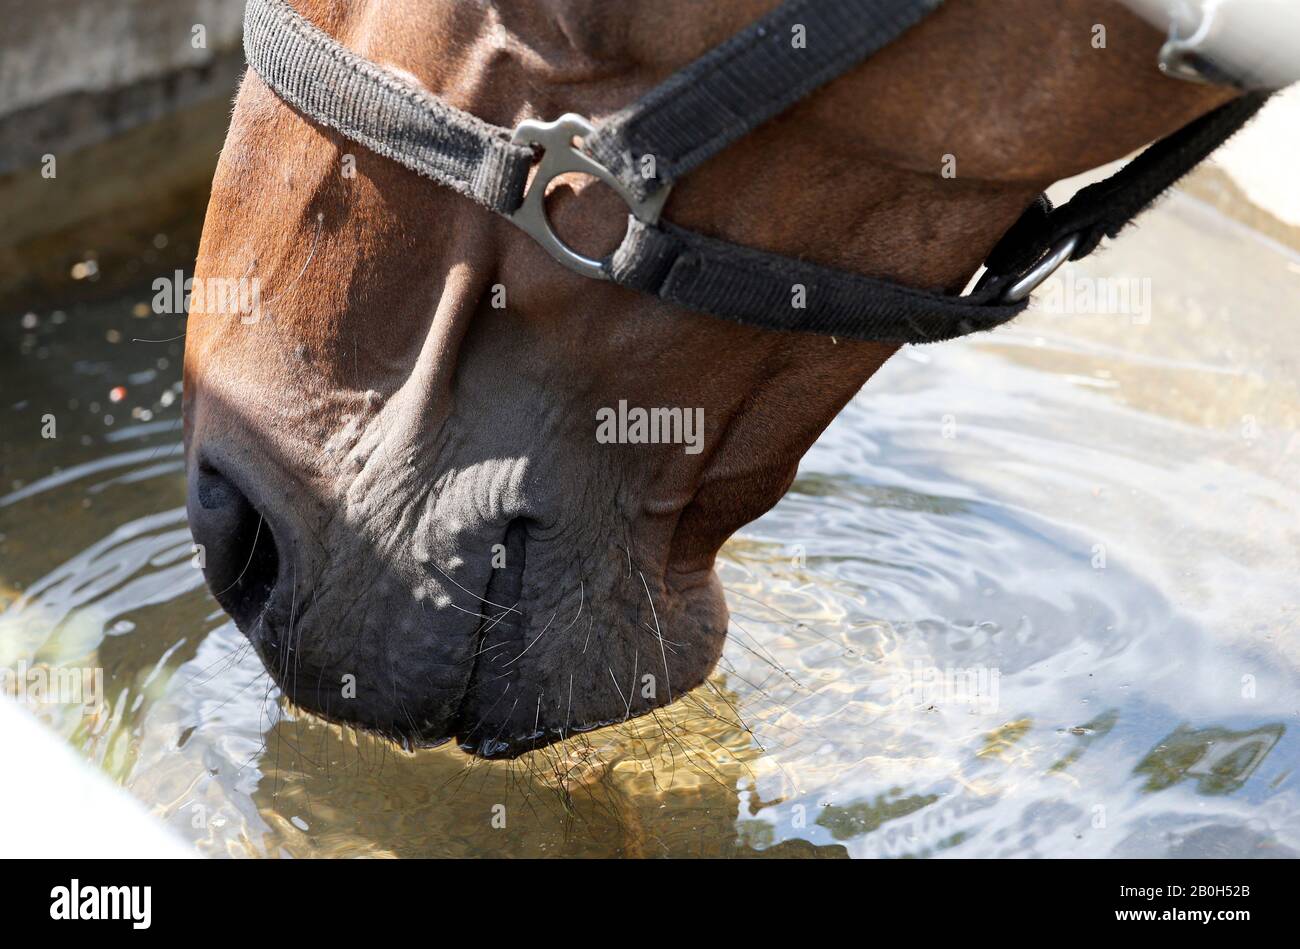 22.06.2019, Bruemmerhof, Bassa Sassonia, Germania - Vista Dettagliata: Il cavallo sta bevendo acqua da una valle sul pascolo. 00S190622D267CAROEX.JPG [MODELLO R Foto Stock